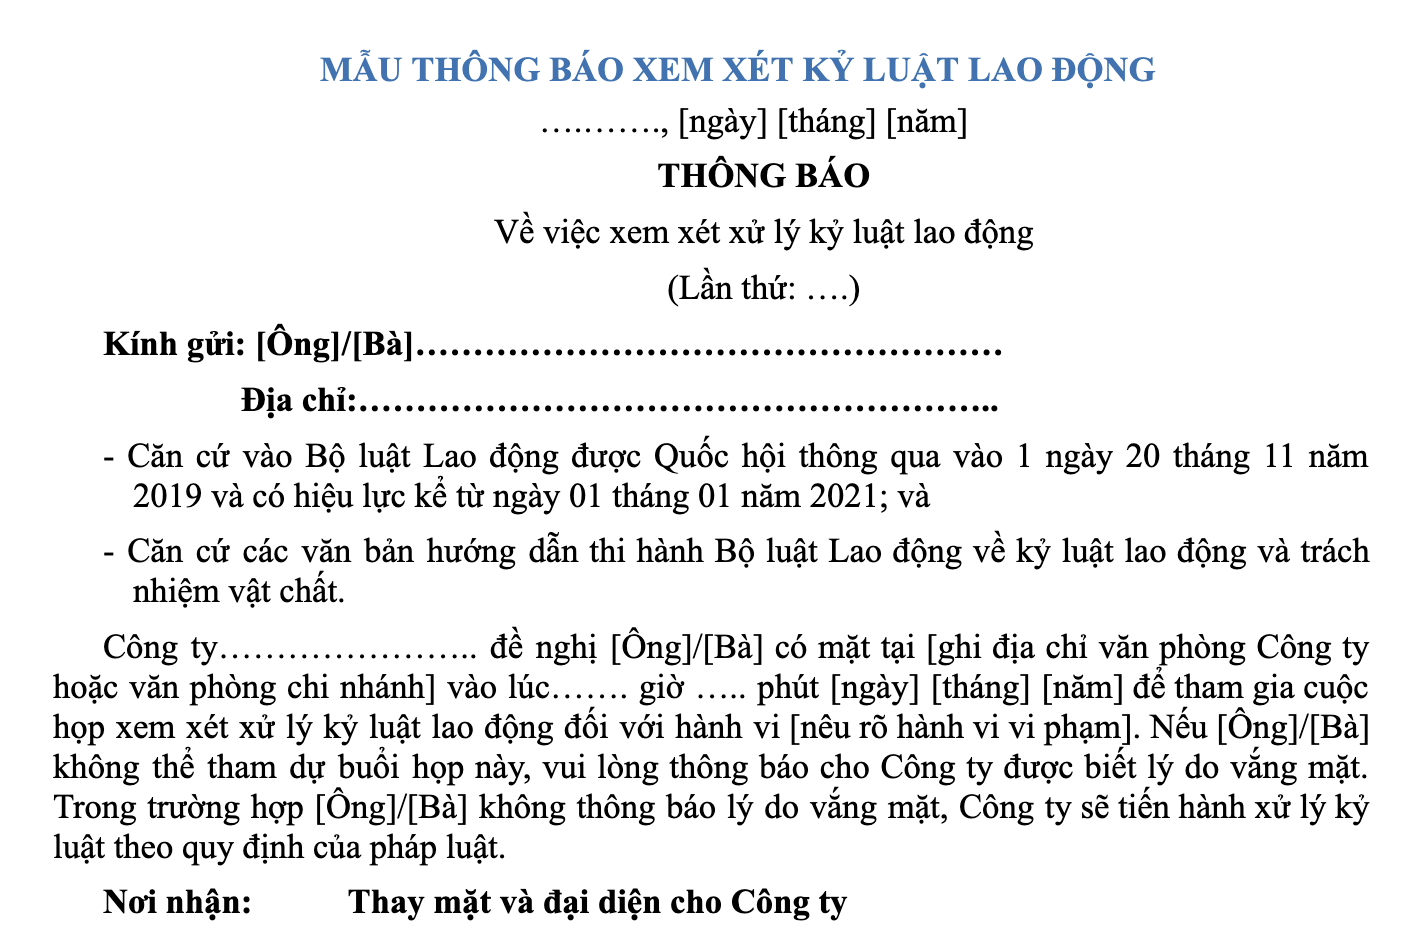 mau-thong-bao-xem-xet-ky-luat-lao-dong-sa-thai